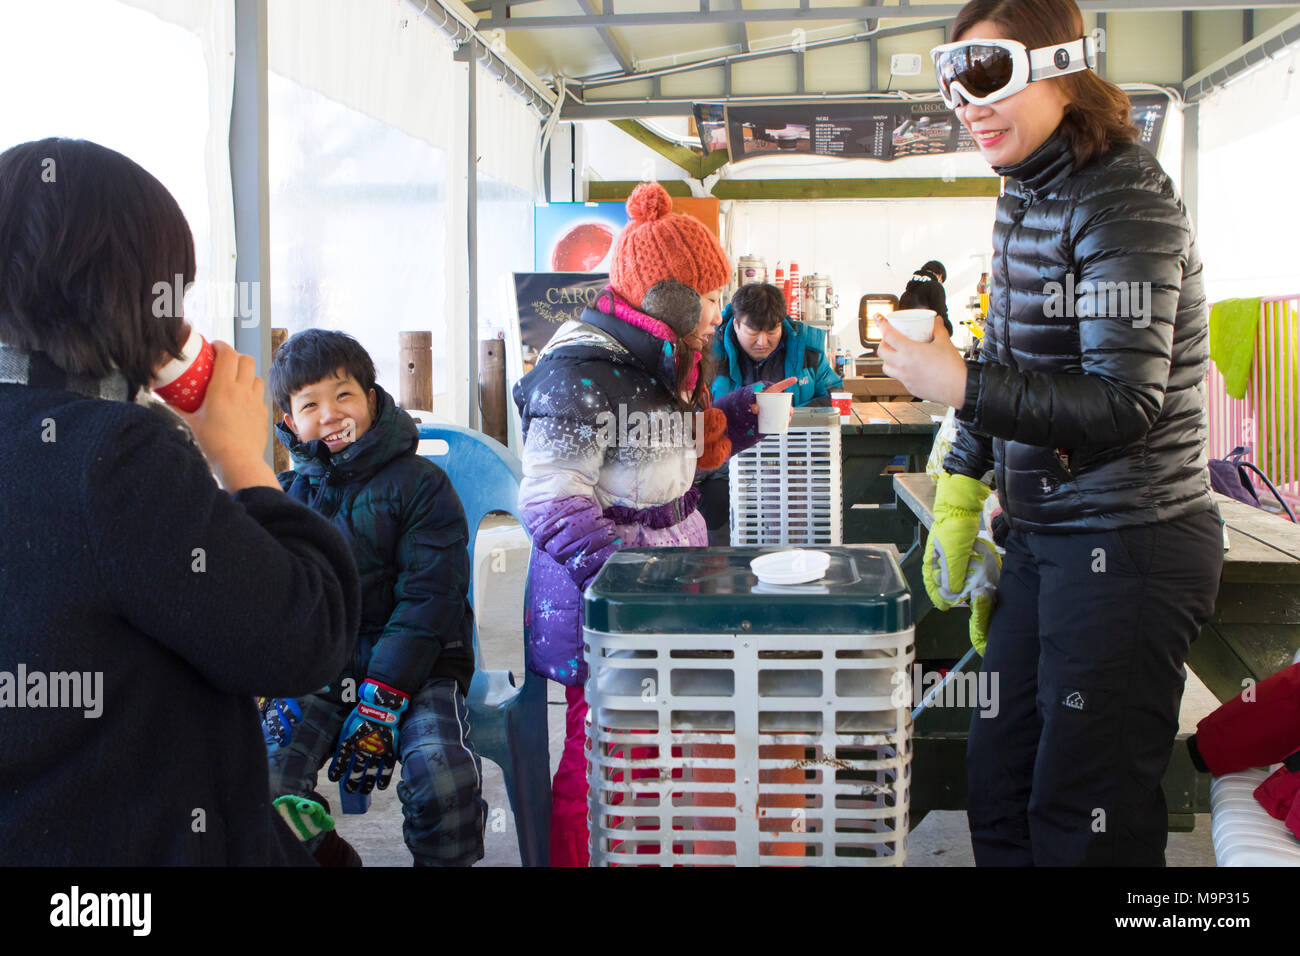 Un asiatico cerca famiglia è in fase di riscaldamento all'interno di una tenda accanto a un riscaldatore, con cioccolata calda. Yongpyong (Dragon Valley) Ski Resort è una stazione sciistica in Corea del Sud, situato in Daegwallyeong-myeon, Pyeongchang, Gangwon-do. È il più grande sci e snowboard resort in Corea. Yongpyong ospiterà la tecnica sci alpino eventi per il 2018 Olimpiadi e Paraolimpiadi invernali di Pyeongchang. Alcune scene del 2002 Korean Broadcasting System dramma Sonata di Inverno sono state filmate presso il resort. Foto Stock